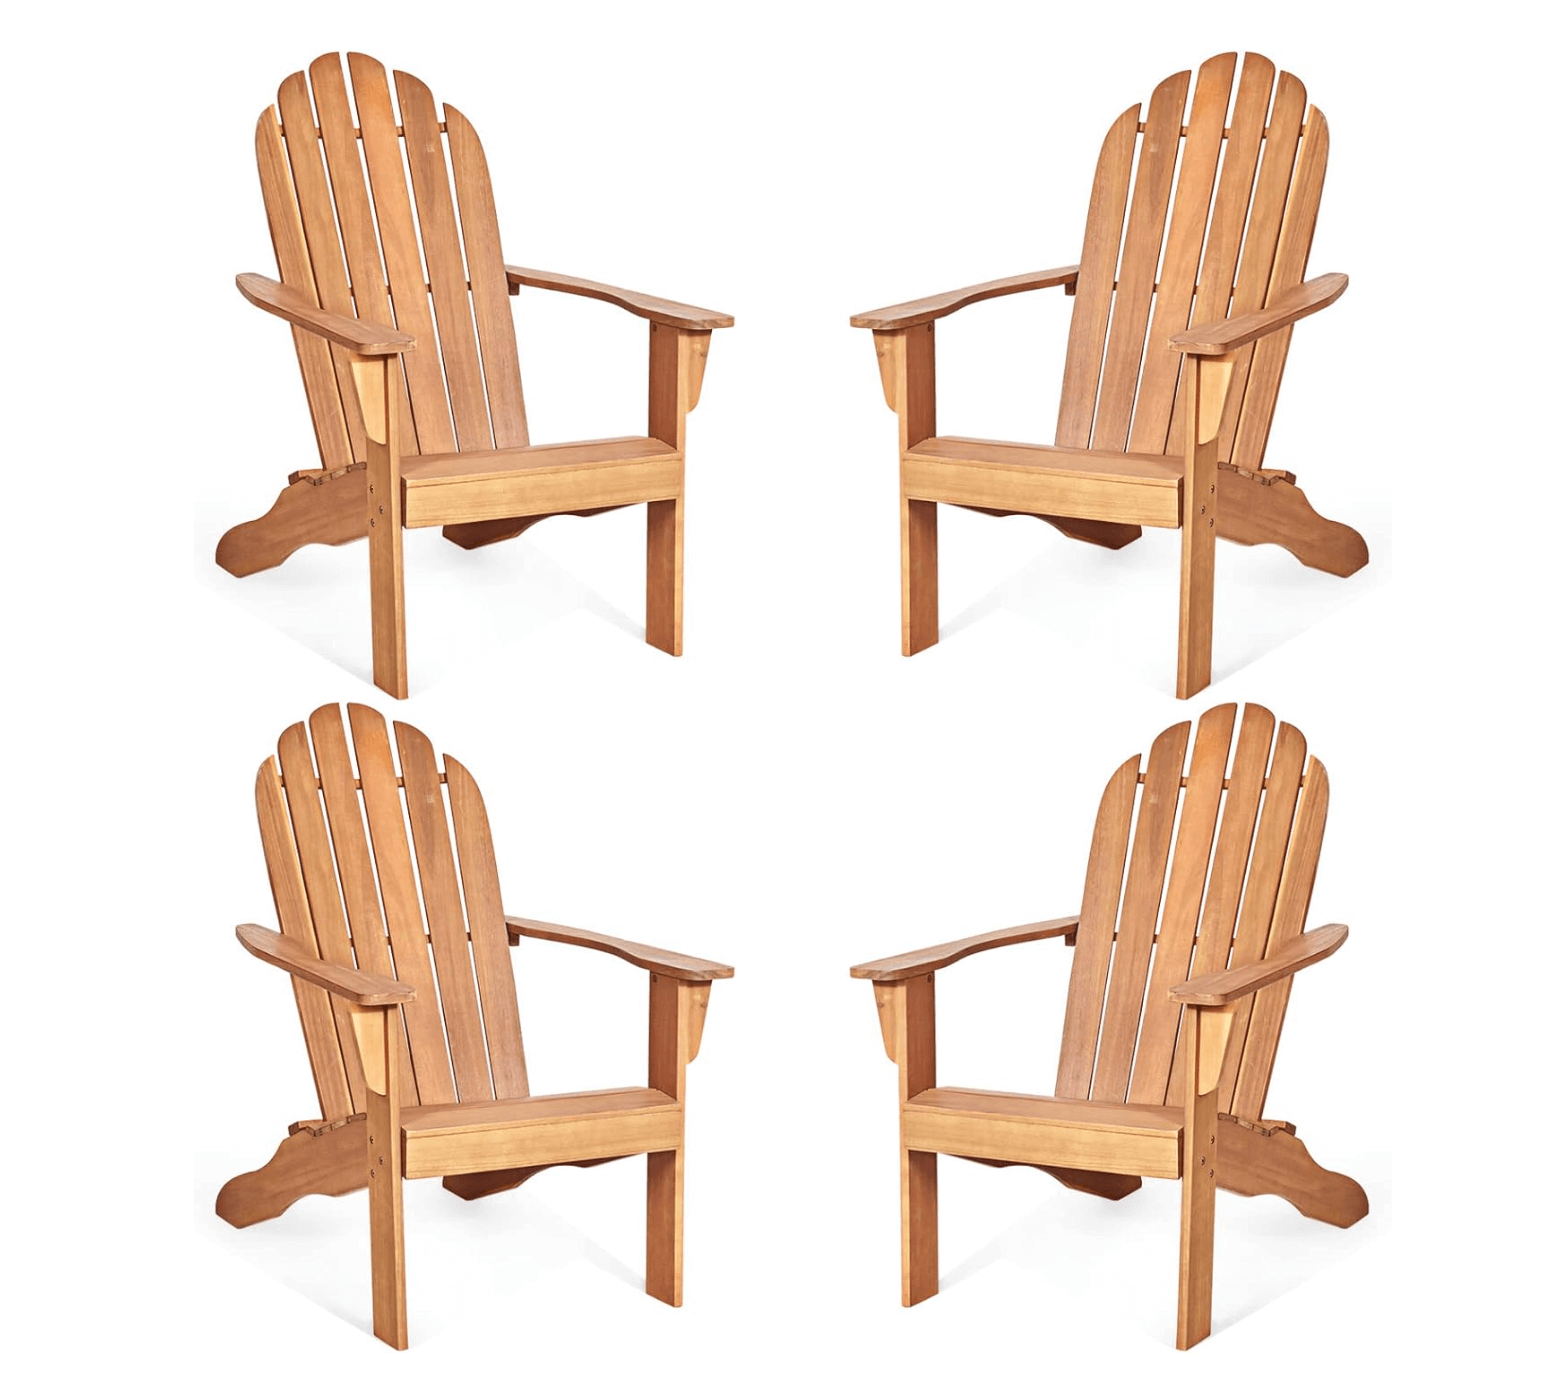 Beautiful Adirondack Chairs.